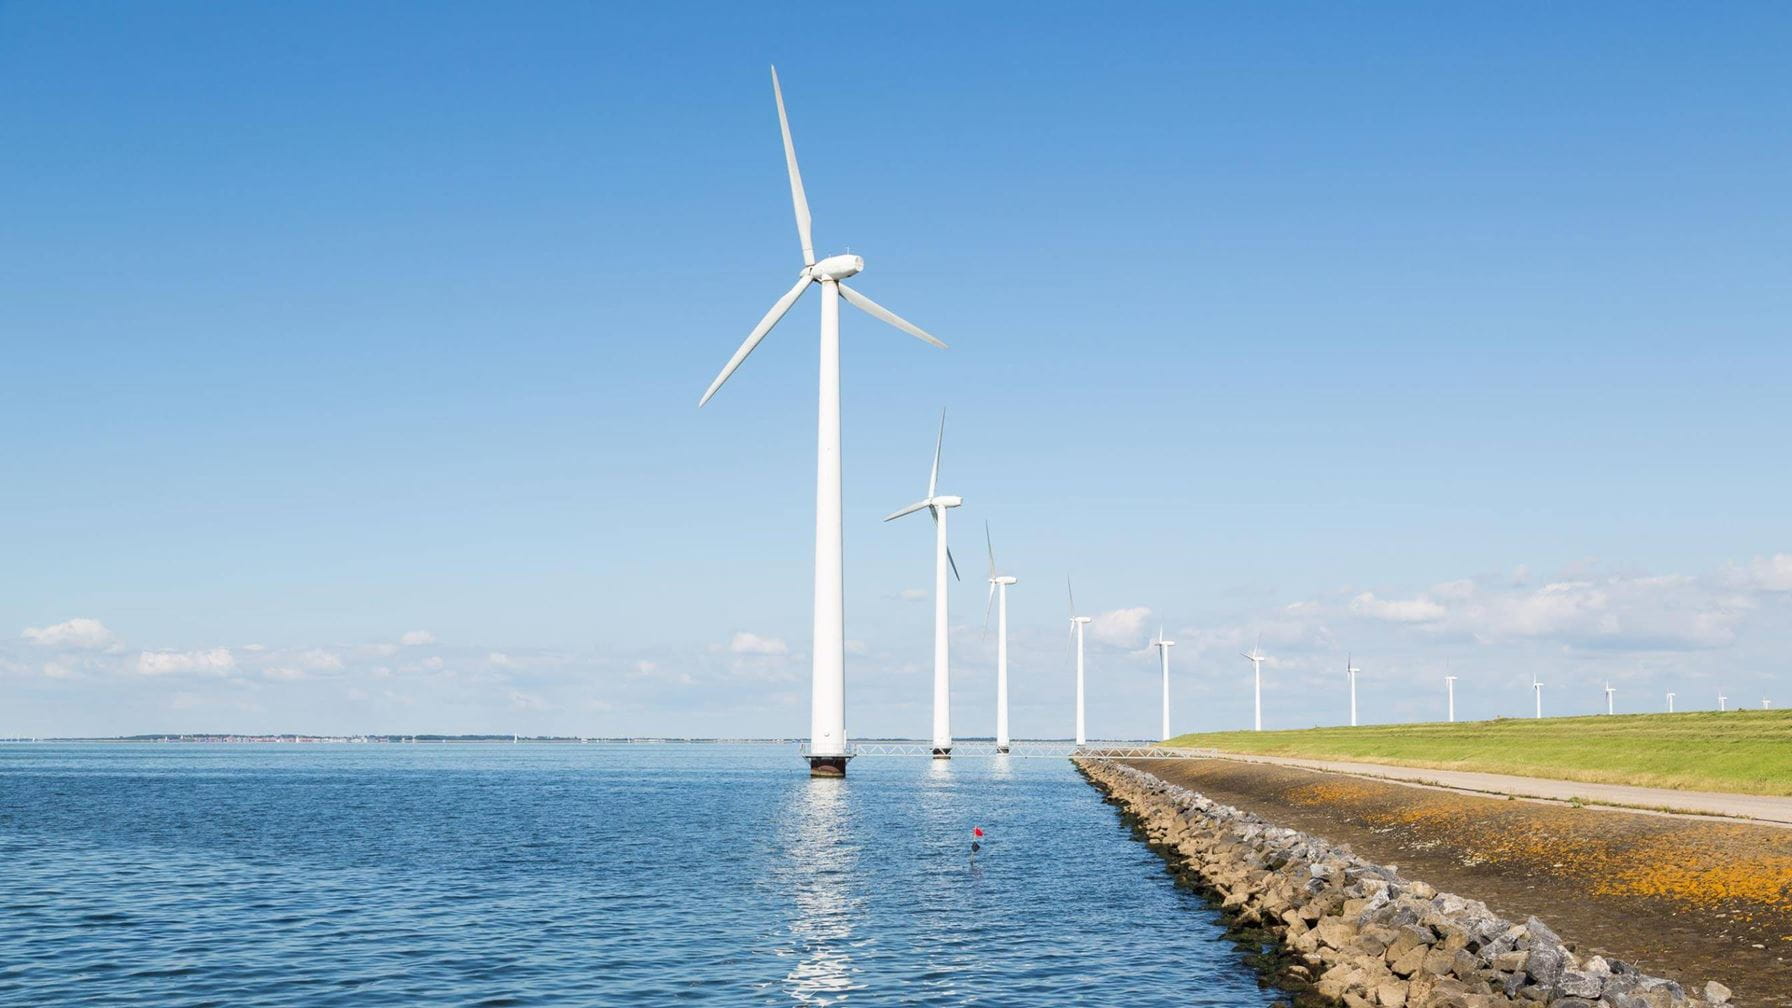 Generators help power wind farm